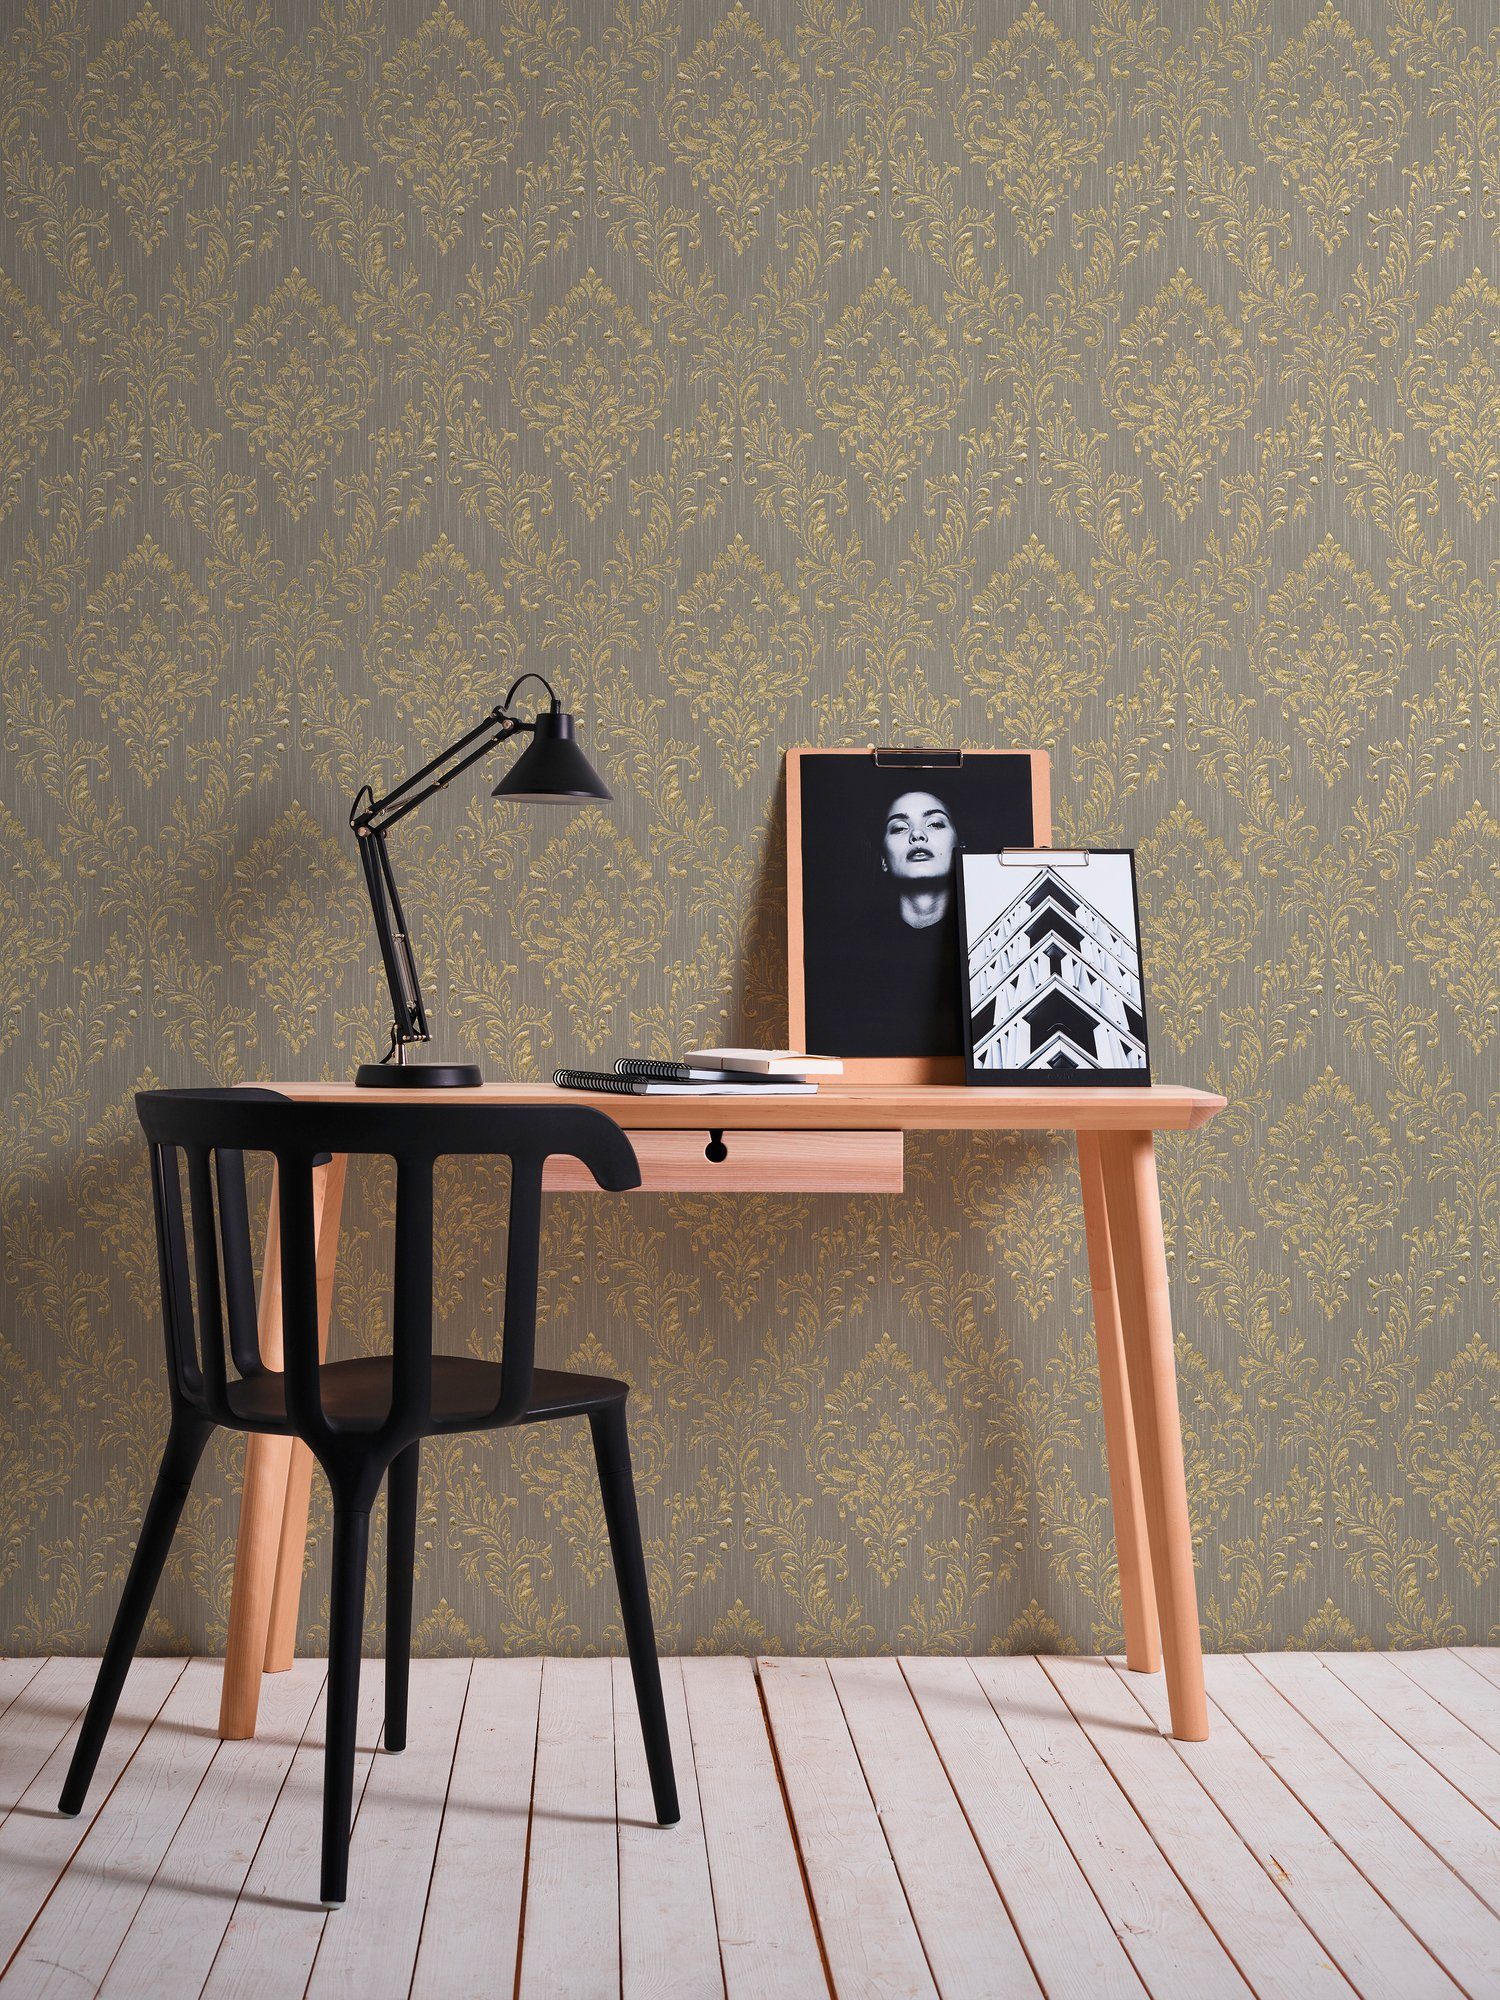 A.S. Création Architects Paper gold/dunkelbeige Textiltapete matt, glänzend, Tapete Metallic Barock, Ornament Silk, Barock samtig